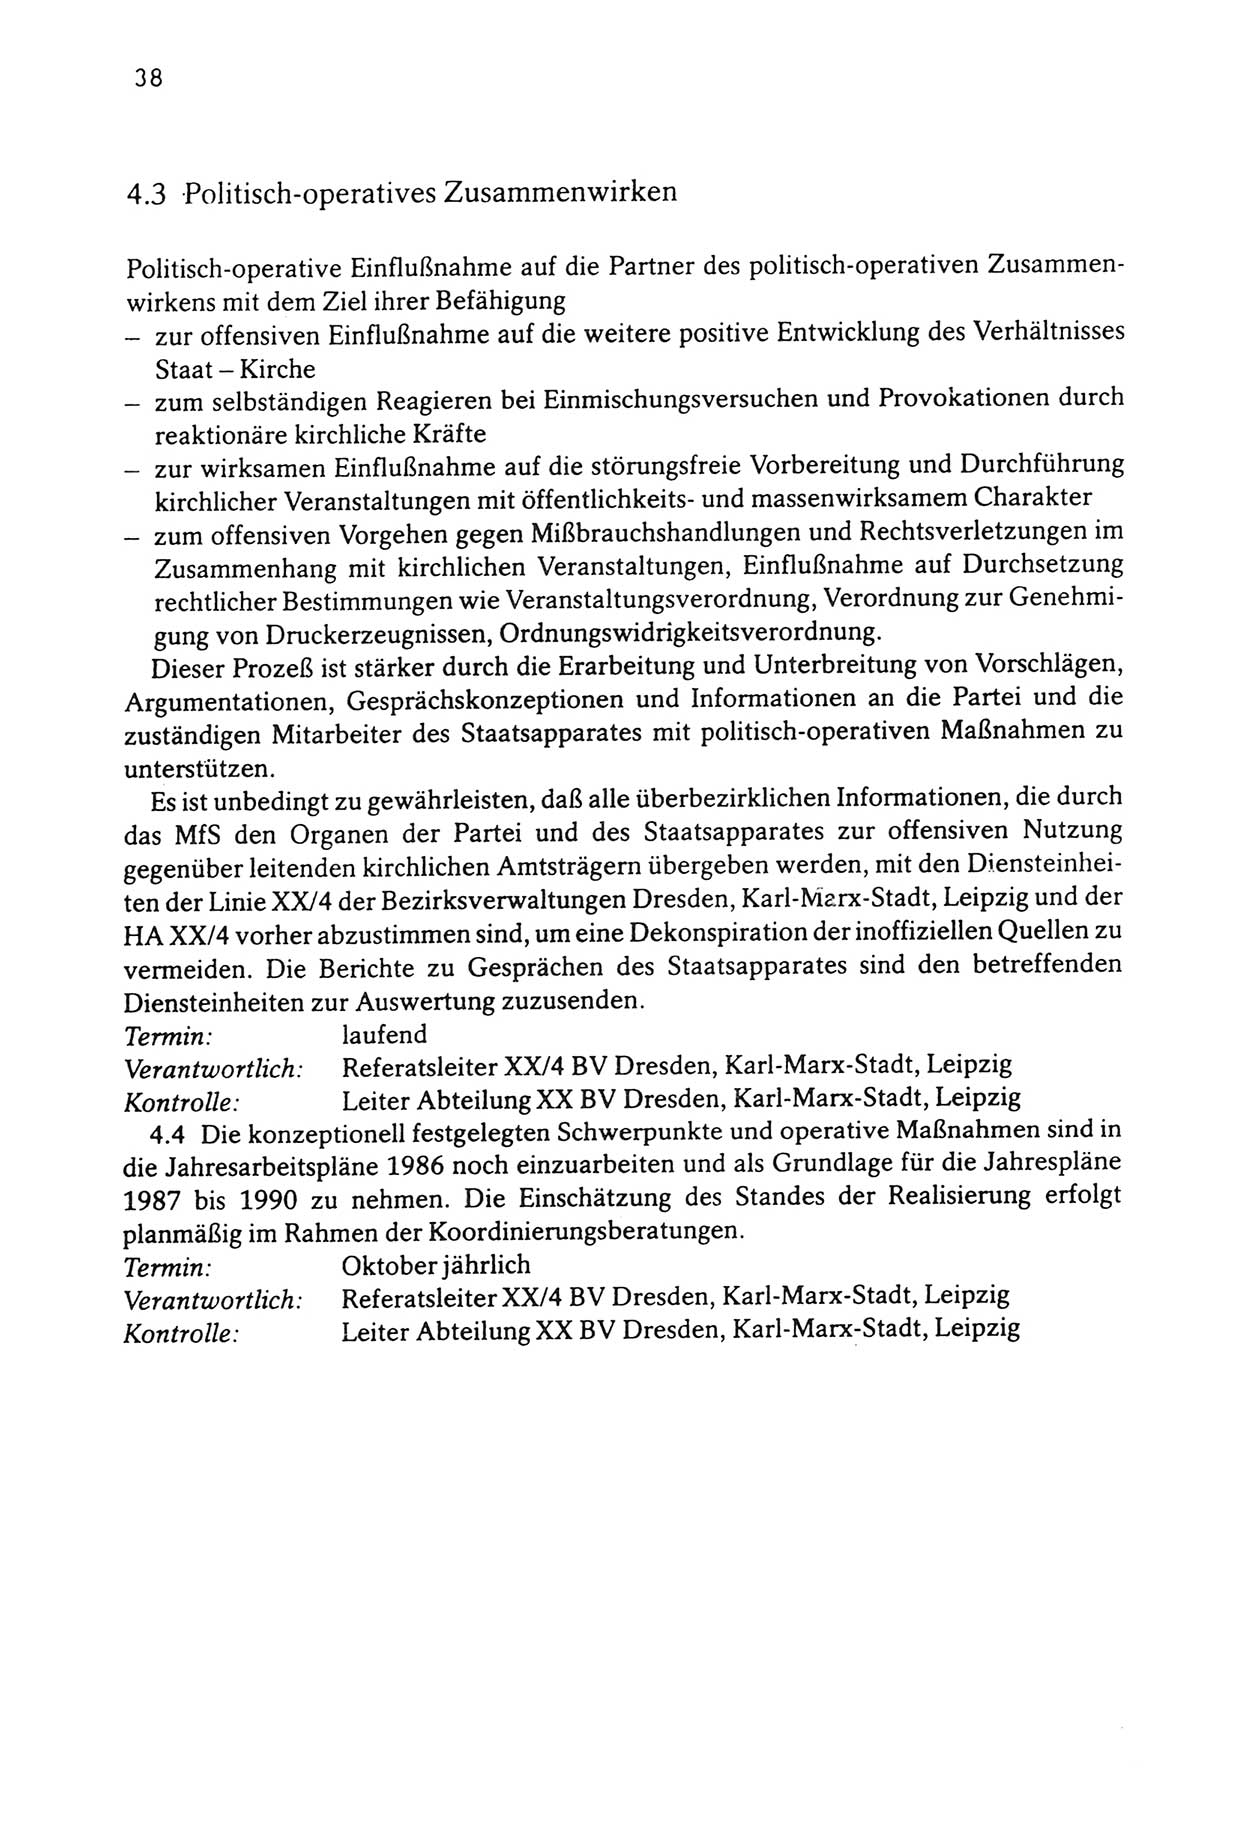 Zwie-Gespräch, Beiträge zur Aufarbeitung der Stasi-Vergangenheit [Deutsche Demokratische Republik (DDR)], Ausgabe Nr. 3, Berlin 1991, Seite 38 (Zwie-Gespr. Ausg. 3 1991, S. 38)